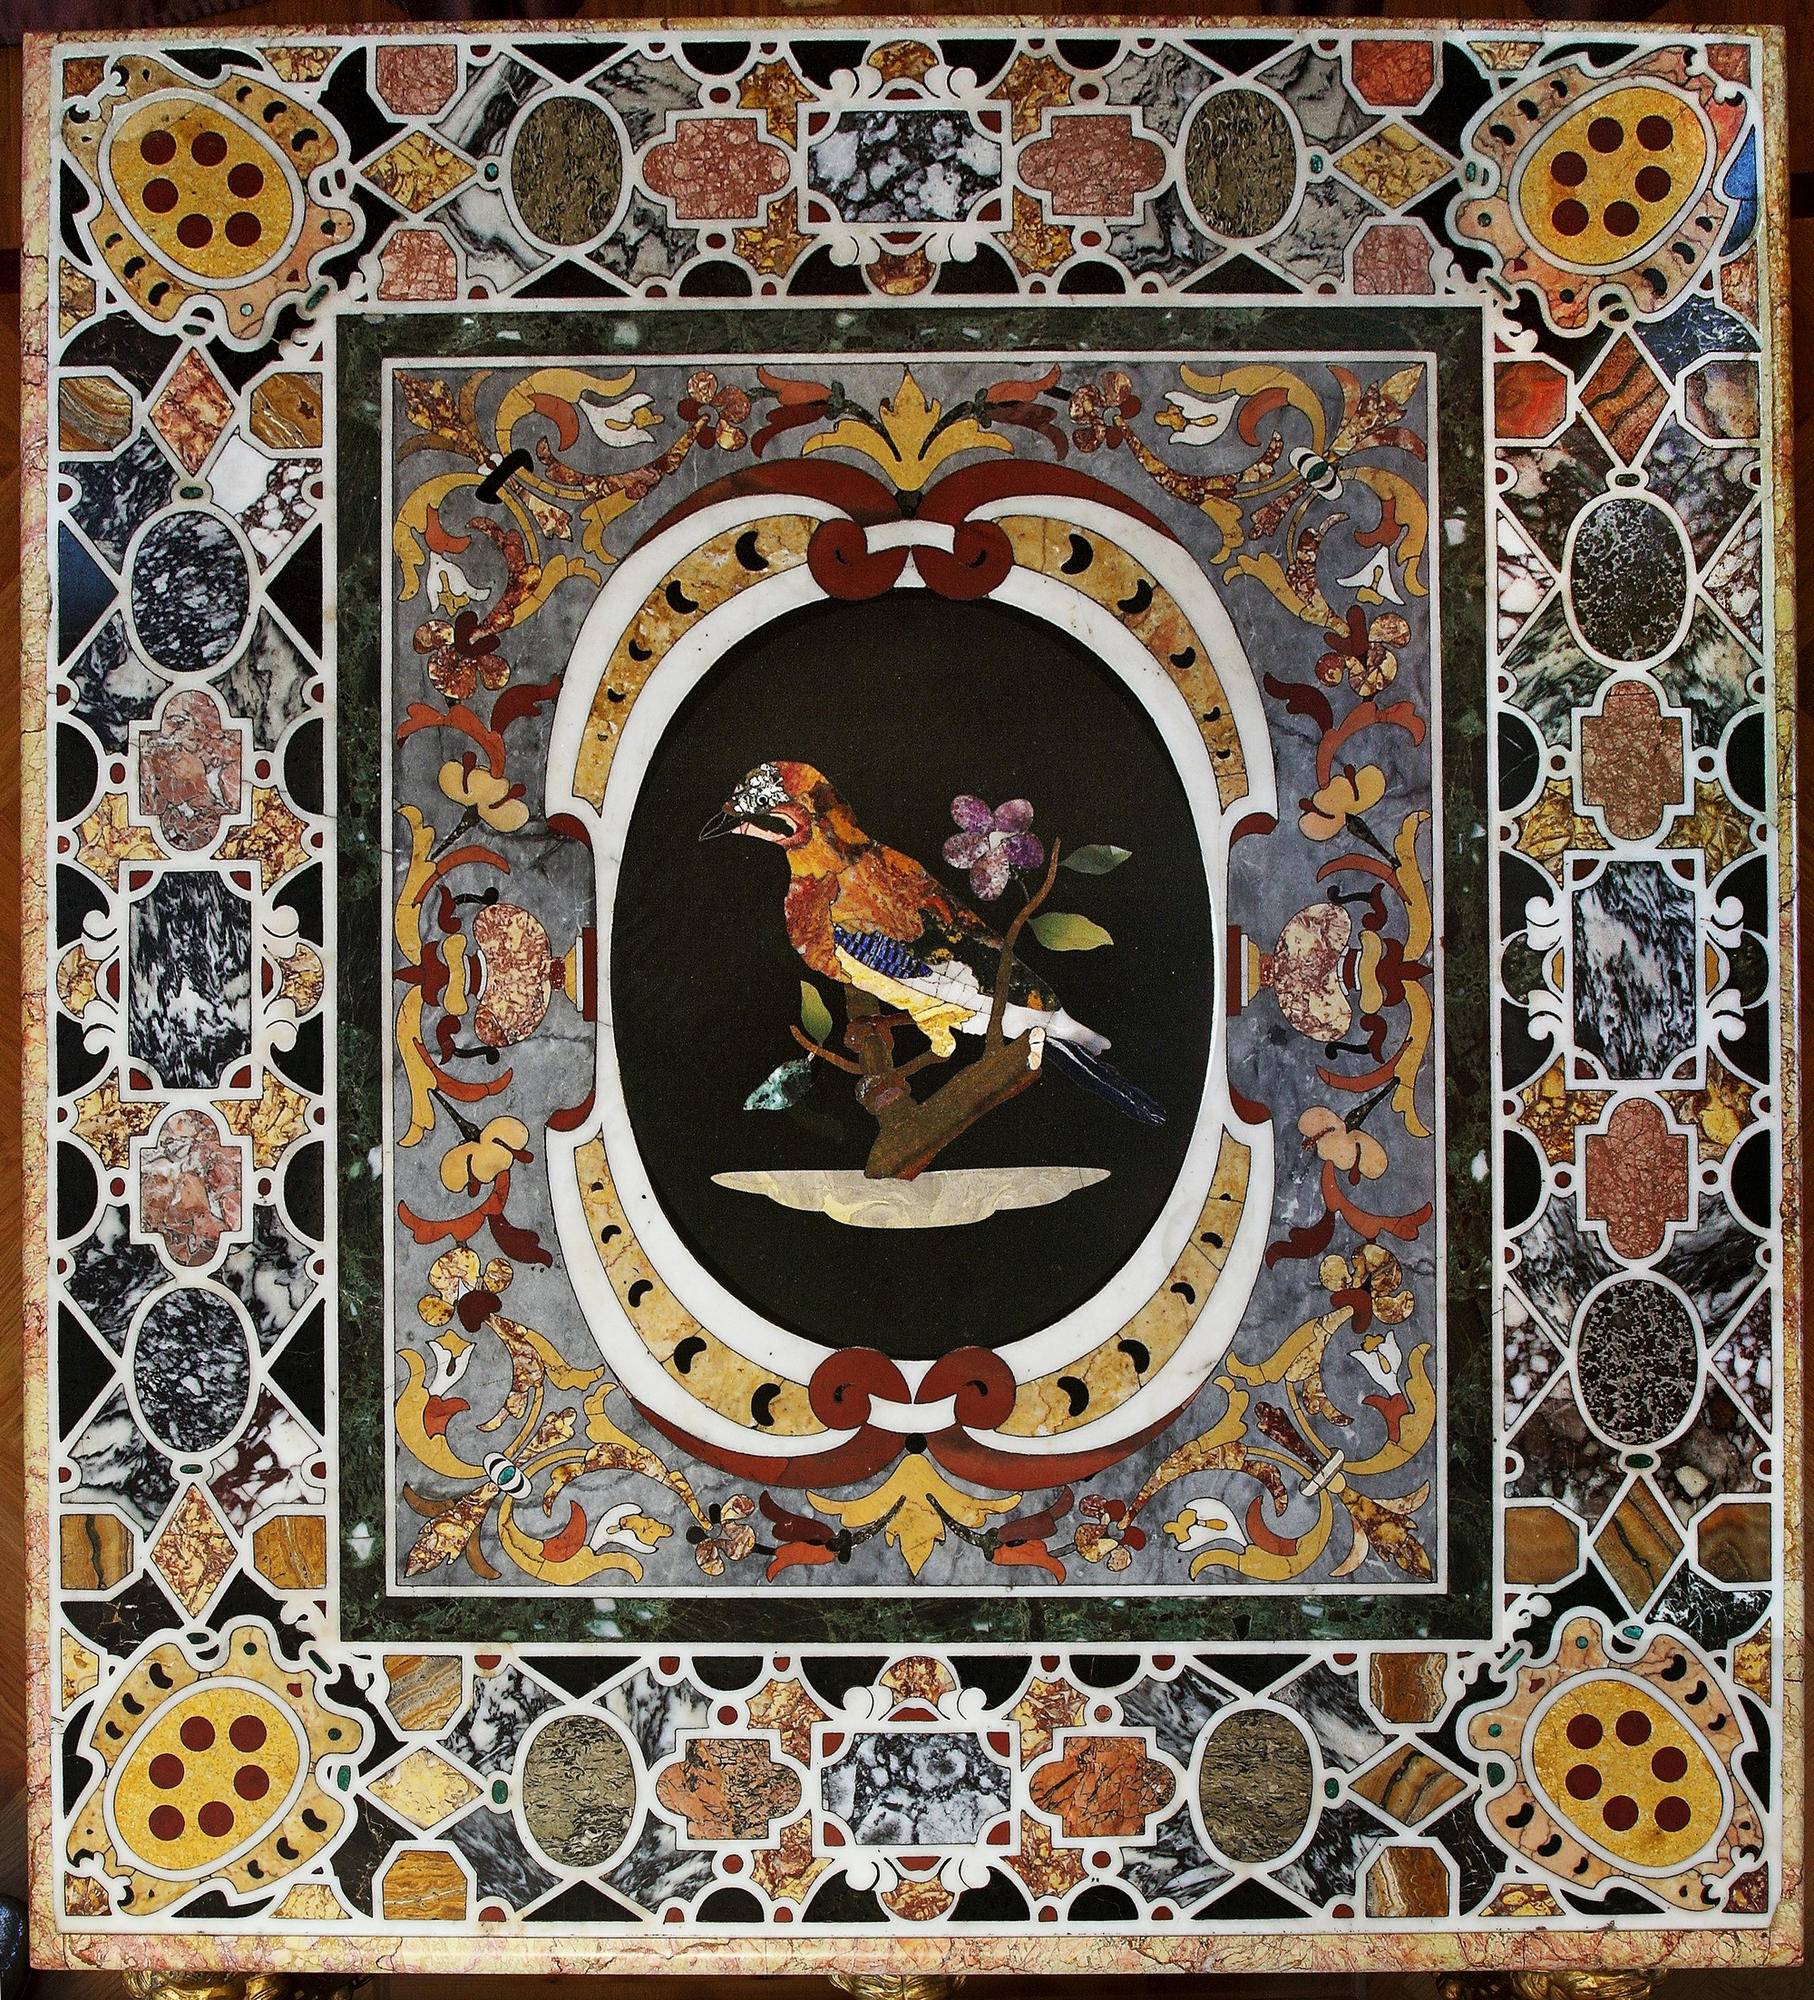 Римская мозаика — древнеримские фрески на военную тематику, примеры узоров мозаичной плитки рима